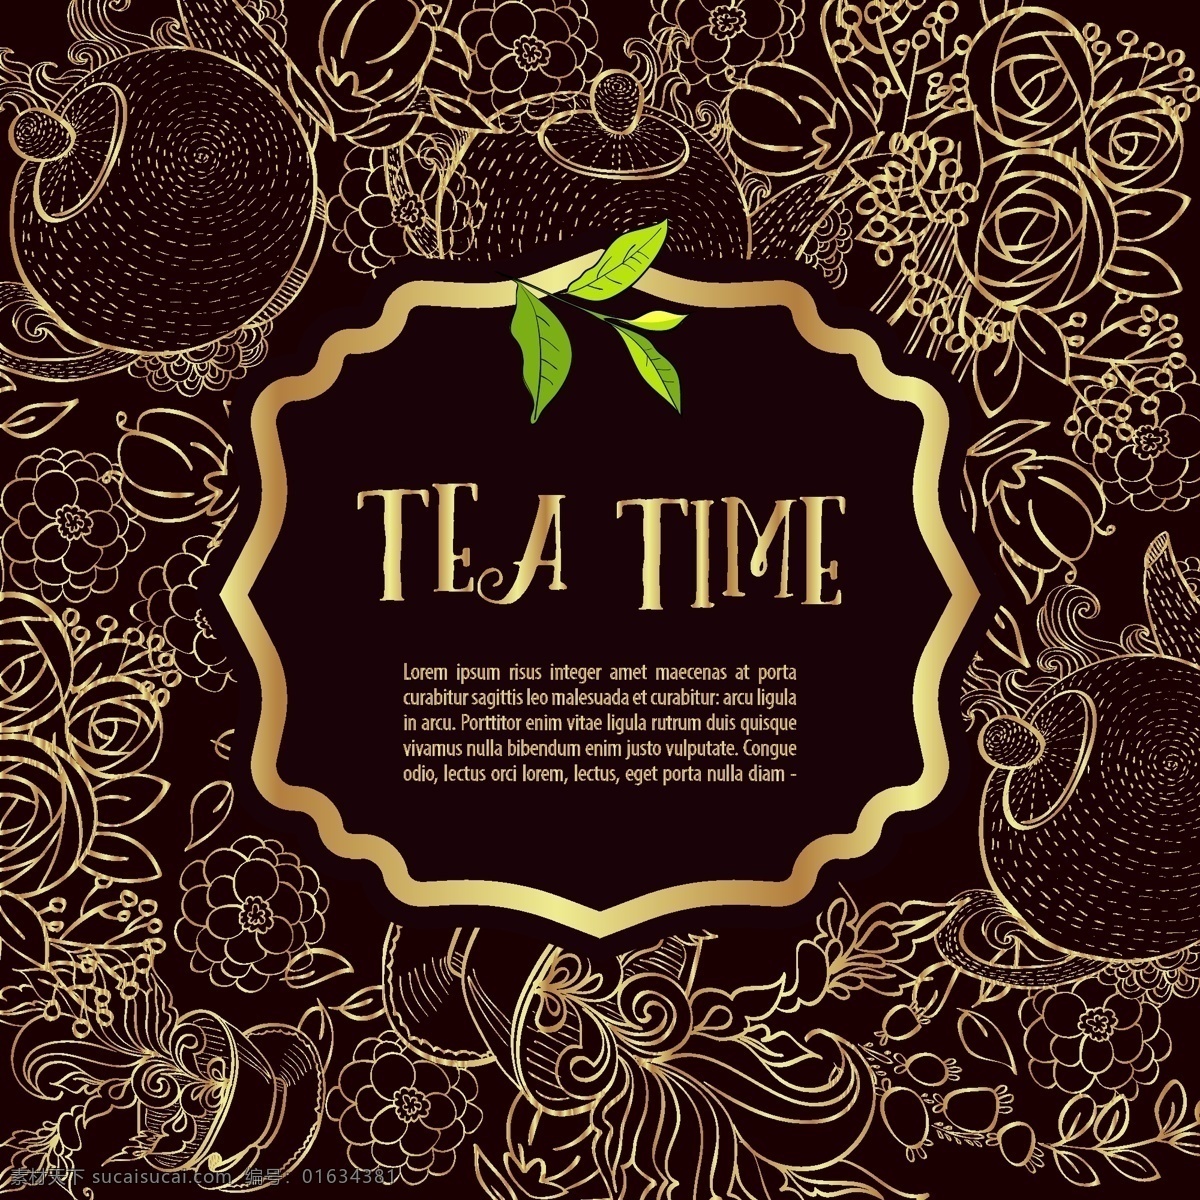 喝茶 时间 新潮 海报 矢量 茶 饮料 杯子 菜单 热 葡萄酒 茶壶 刻字 报价 早餐 咖啡